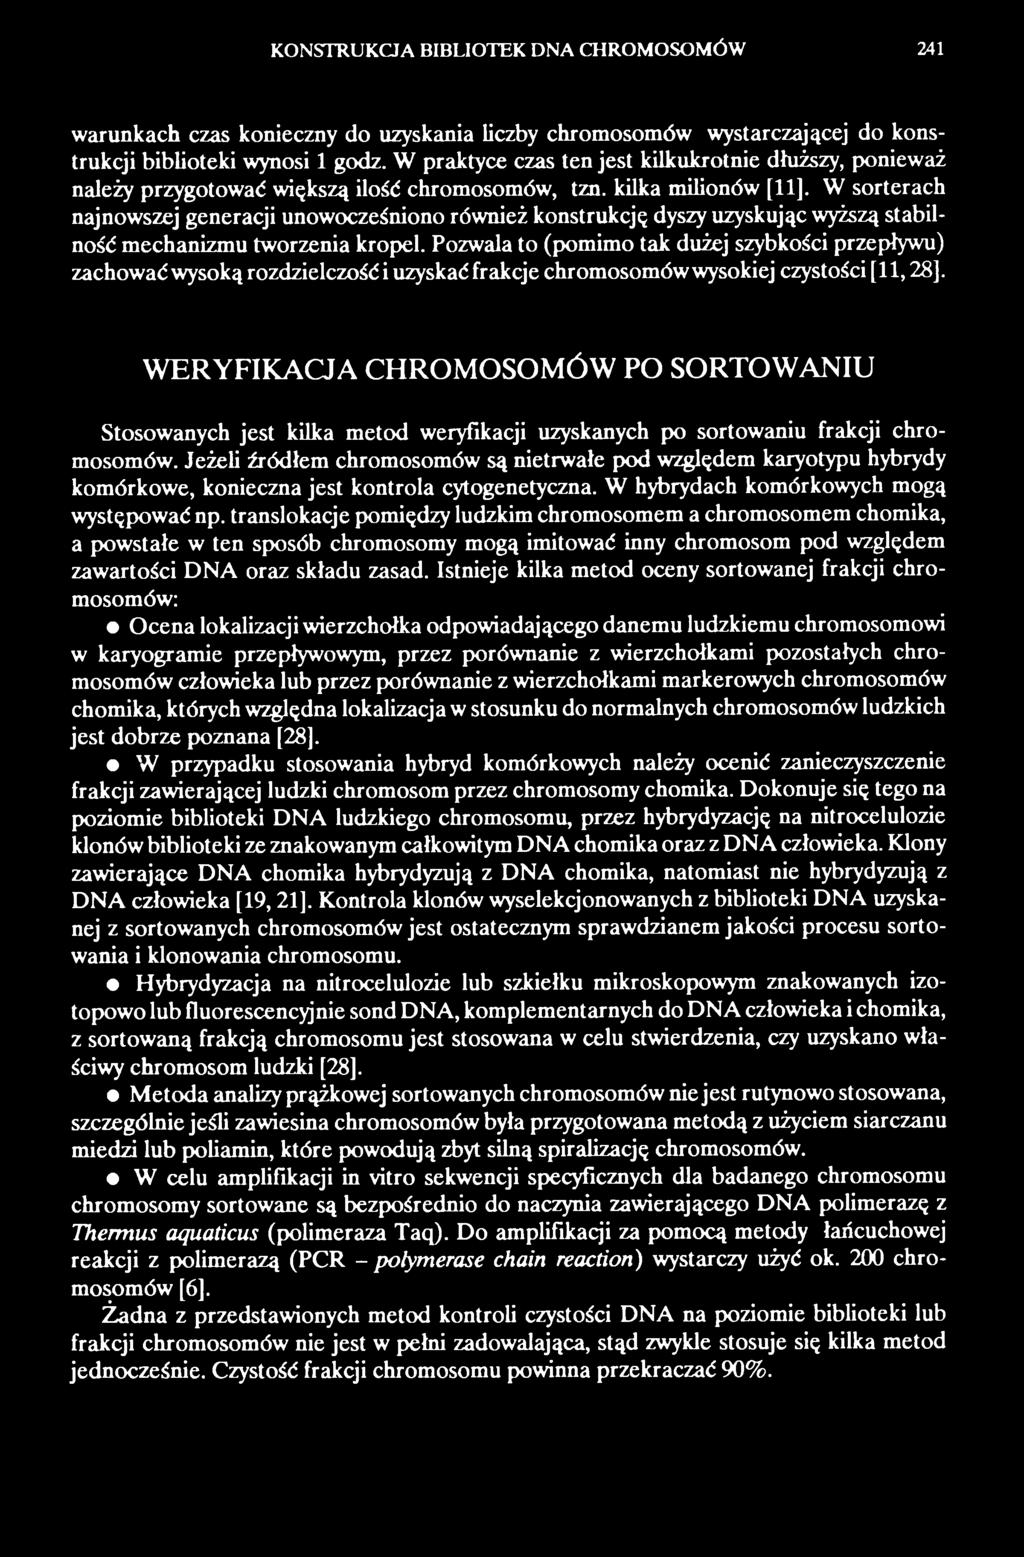 WERYFIKACJA CHROMOSOMÓW PO SORTOWANIU Stosowanych jest kilka metod weryfikacji uzyskanych po sortowaniu frakcji chromosomów.